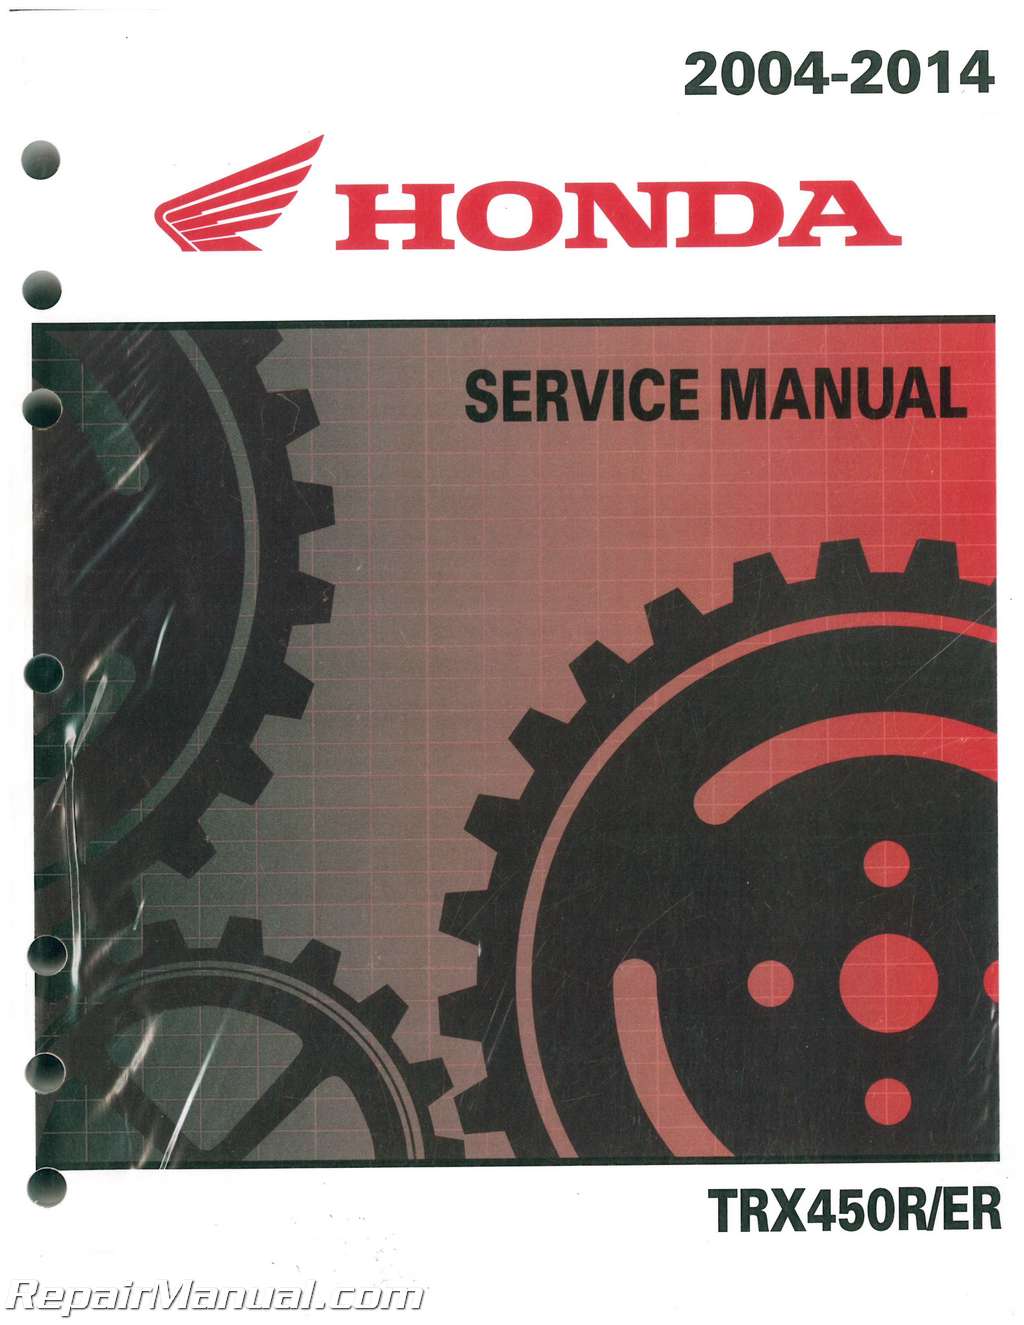 Honda trx 700 service manual download